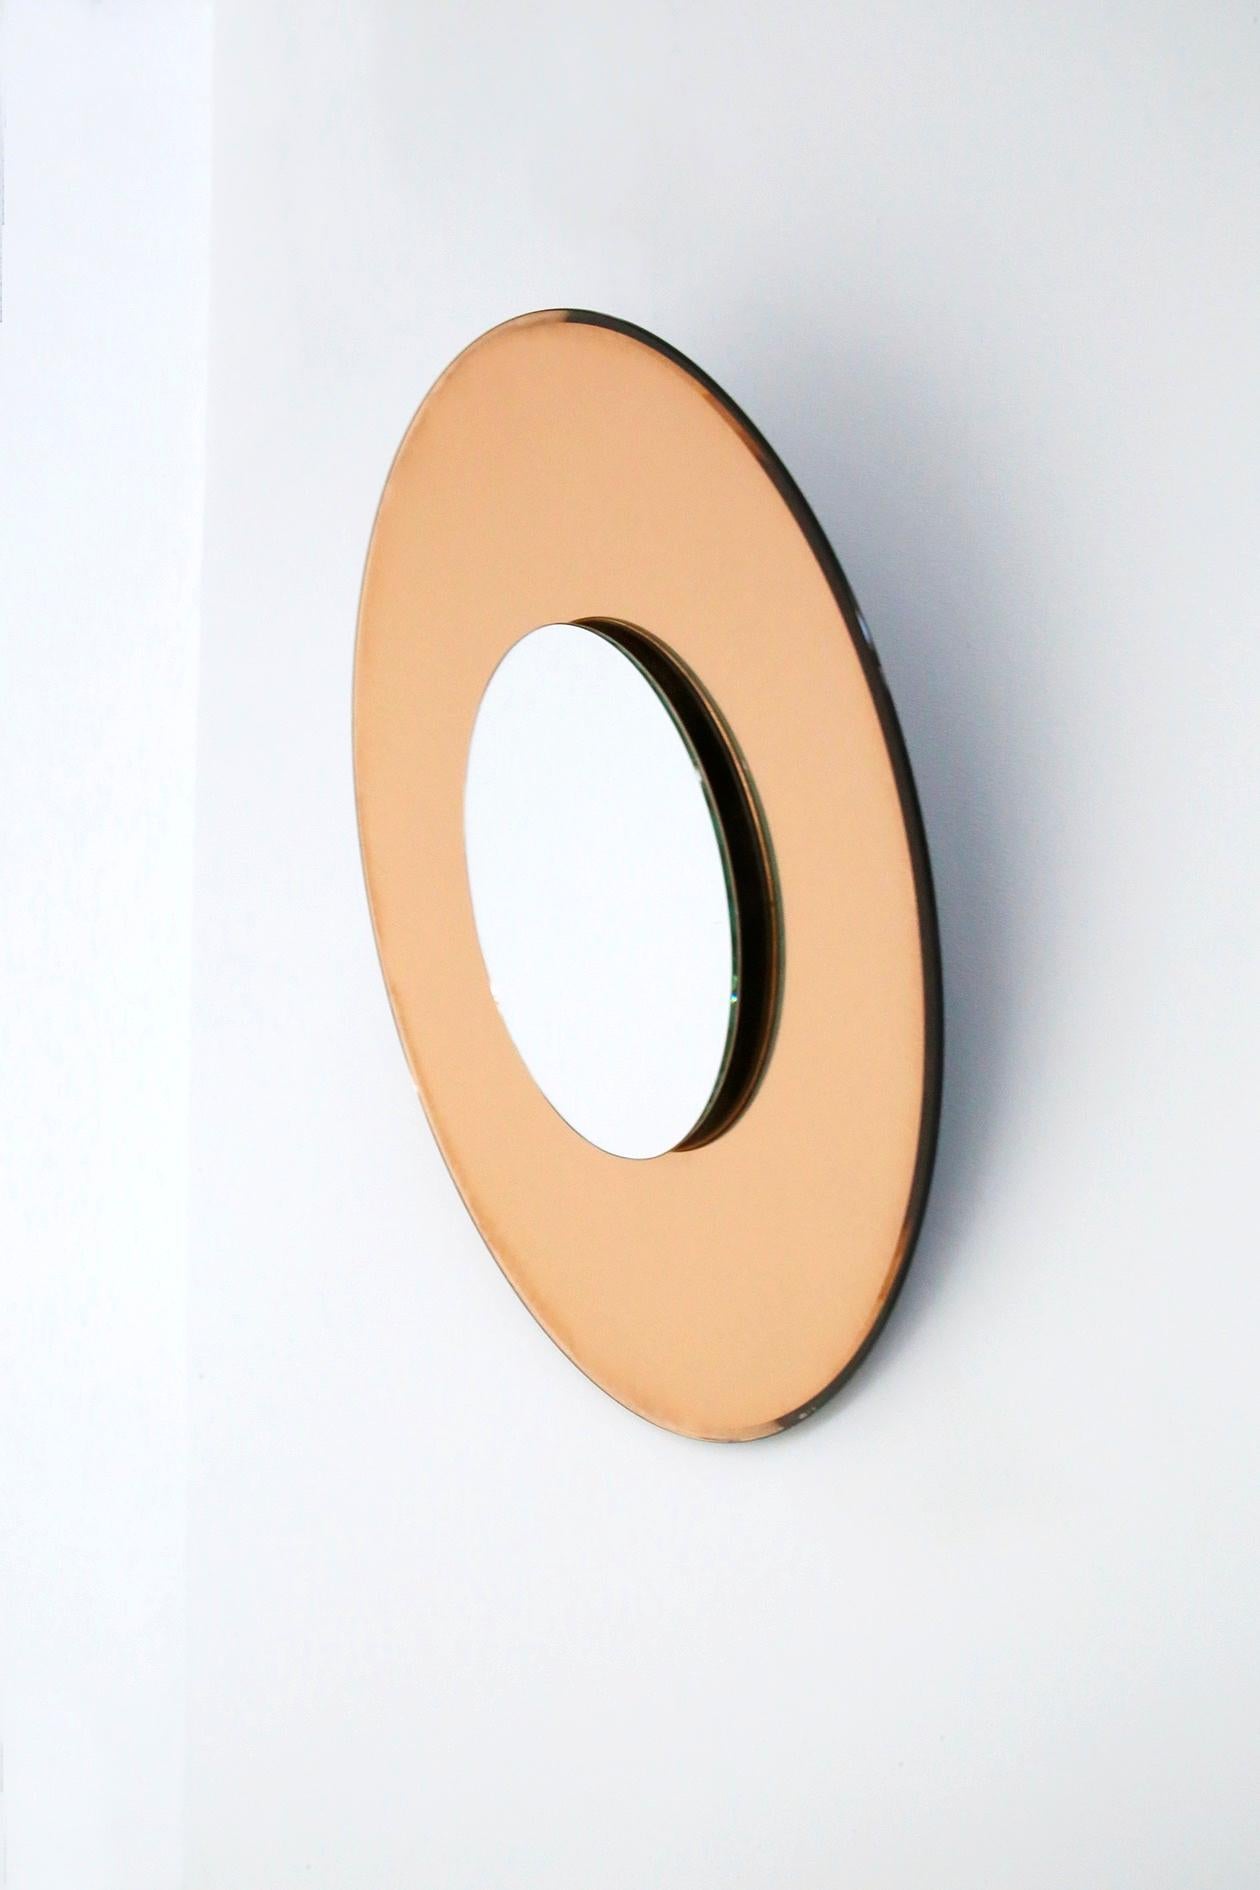 Modern Contemporary Orange Mirror in Style Fontana Arte by Effetto Vetro